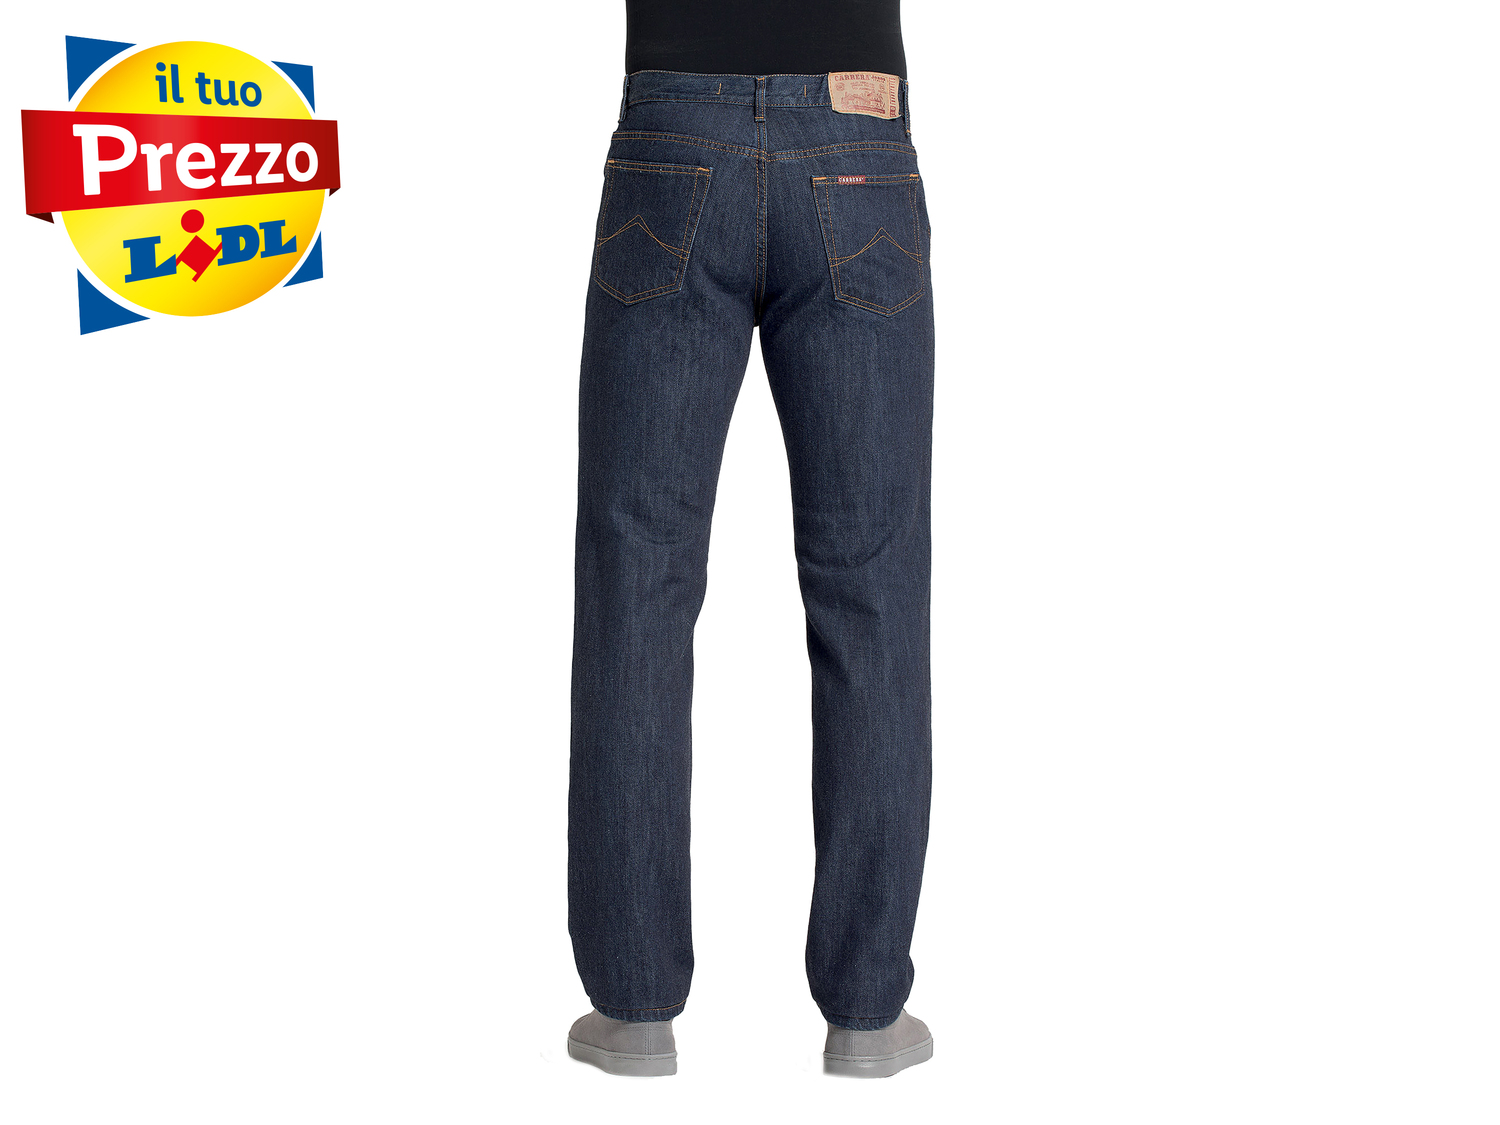 Jeans da uomo Carrera, prezzo 24.99 &#8364; 
Misure: 46-58 
- Puro cotone
Taglie ...